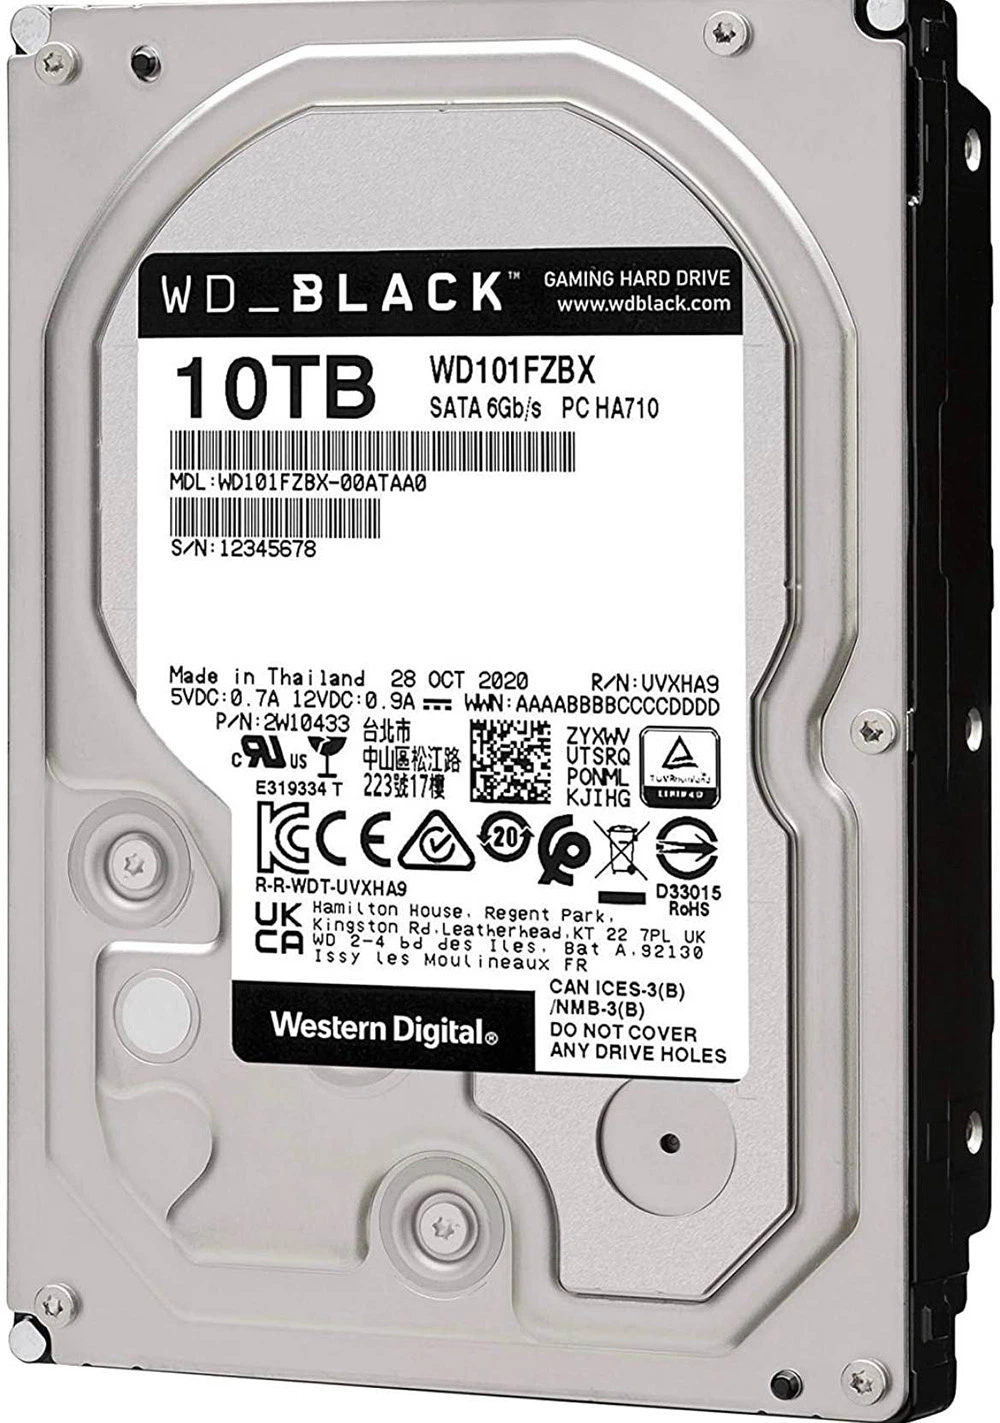 قرص صلب Western Digital Black Disk سعة 10 تيرابايت بسرعة 7200 دورة/ق محرك أقراص ثابتة بسرعة 6 جيجابت/ثانية بسرعة 256 م (WD101FZBX) ومحرك أقراص ثابتة/محرك أقراص ثابتة Wd